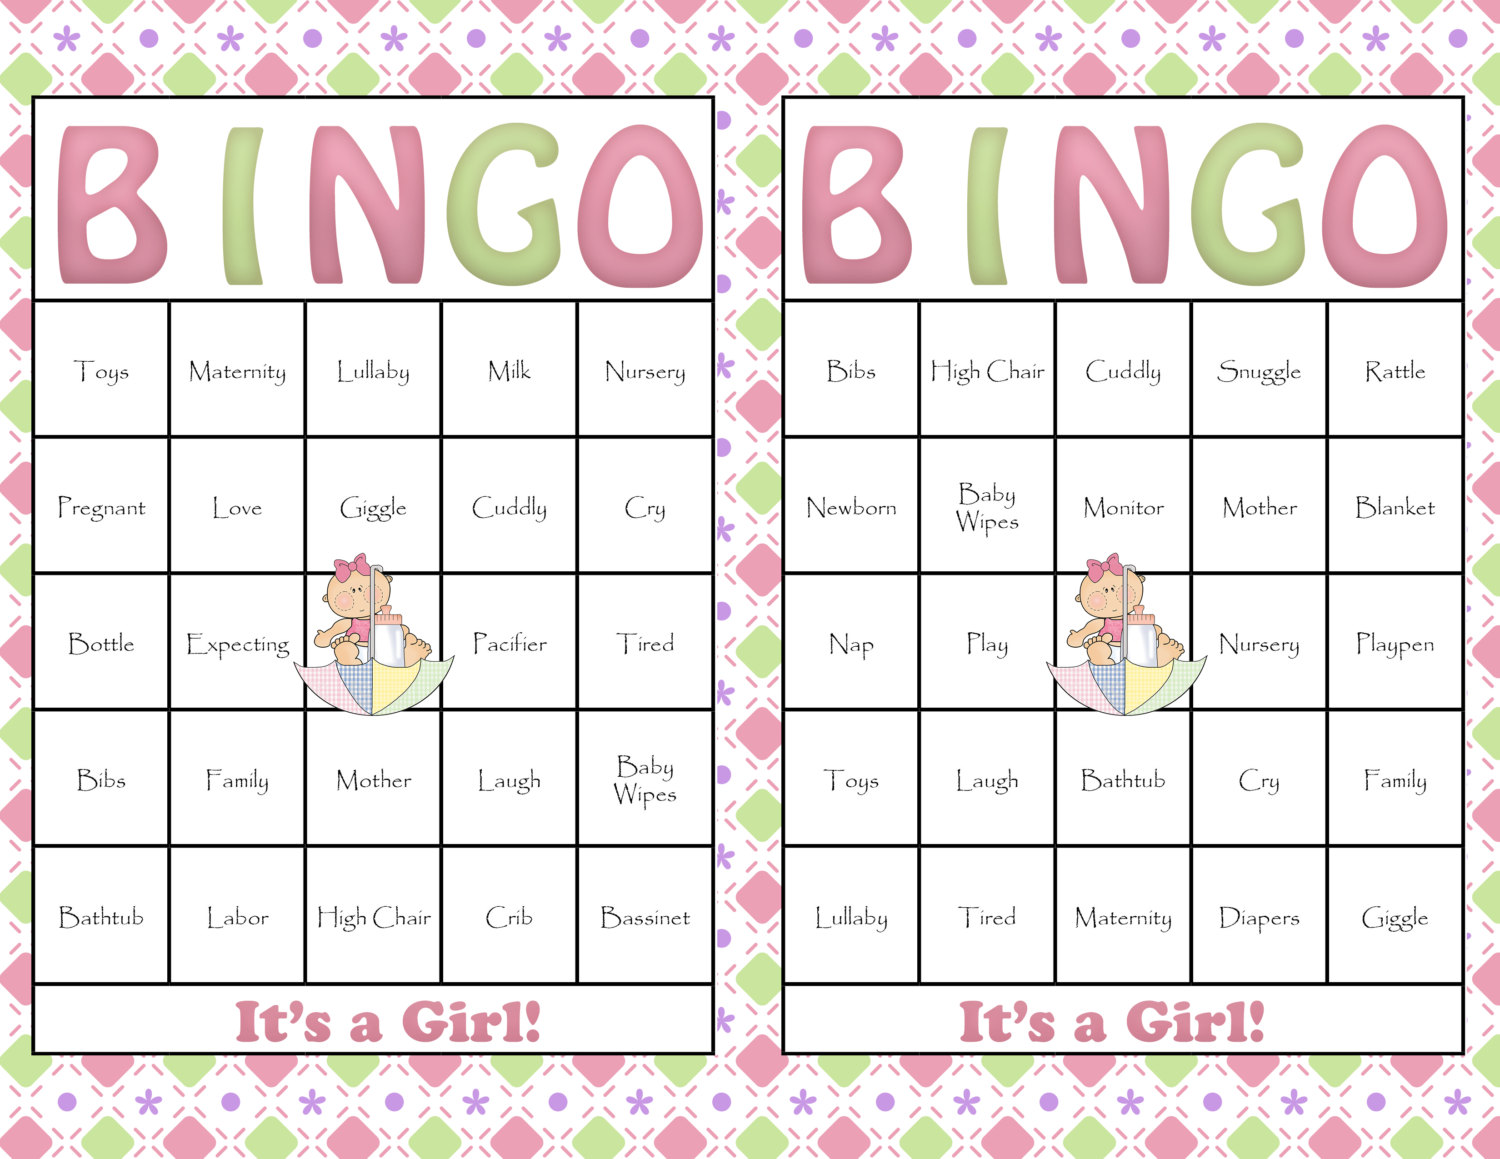 baby-gift-bingo-free-printable-bingo-cards-bingo-for-kids-bingo